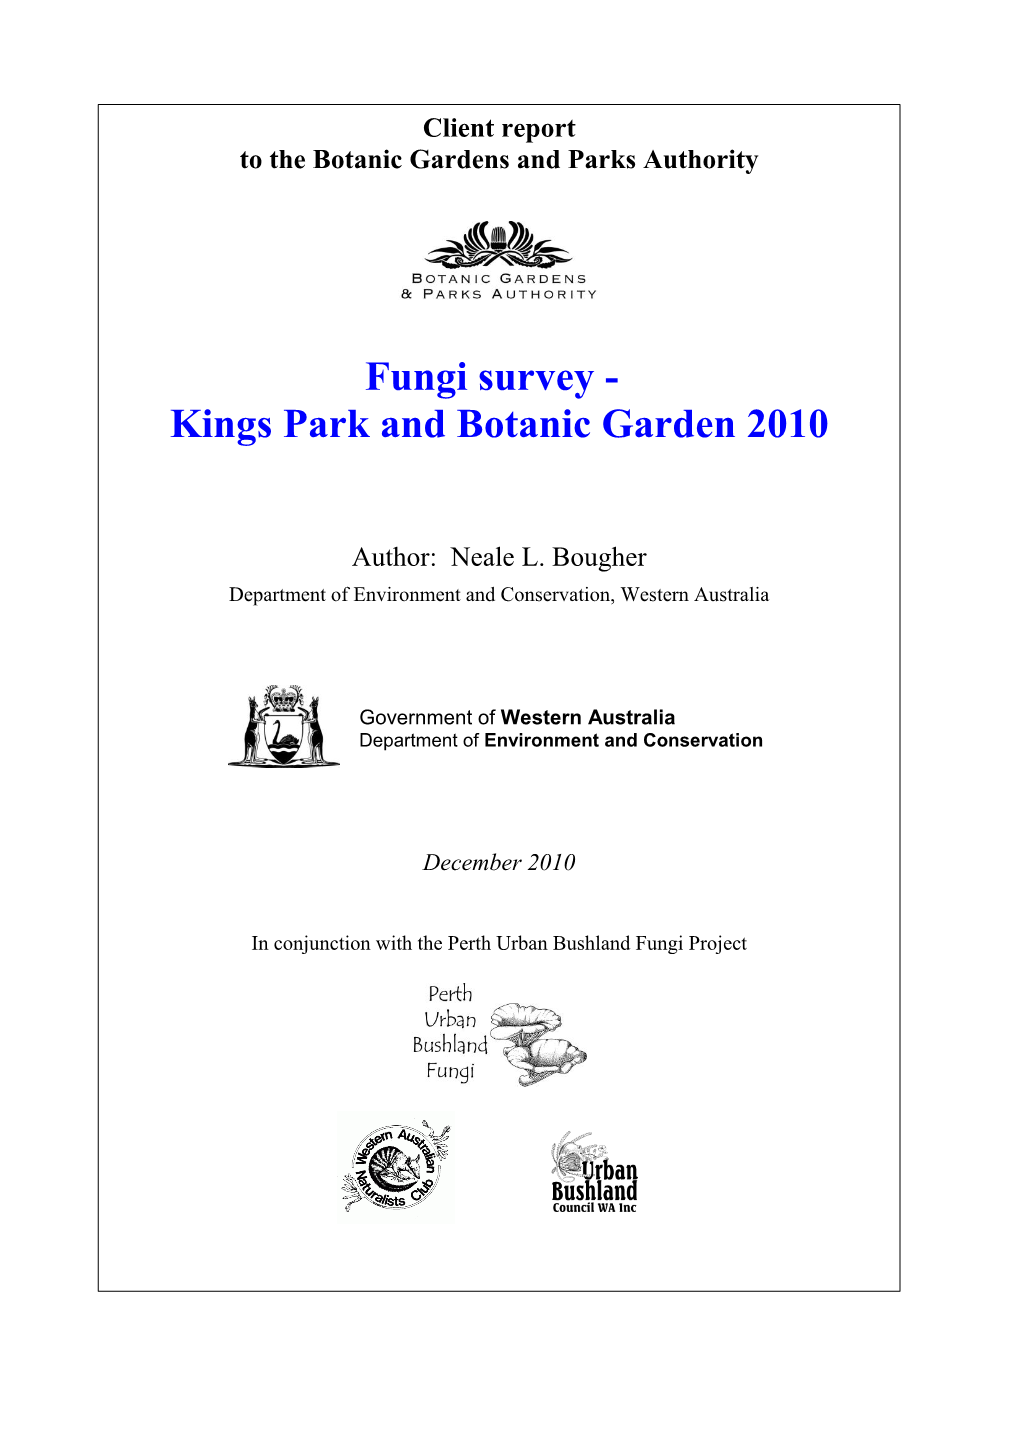 Kings Park Fungi Report